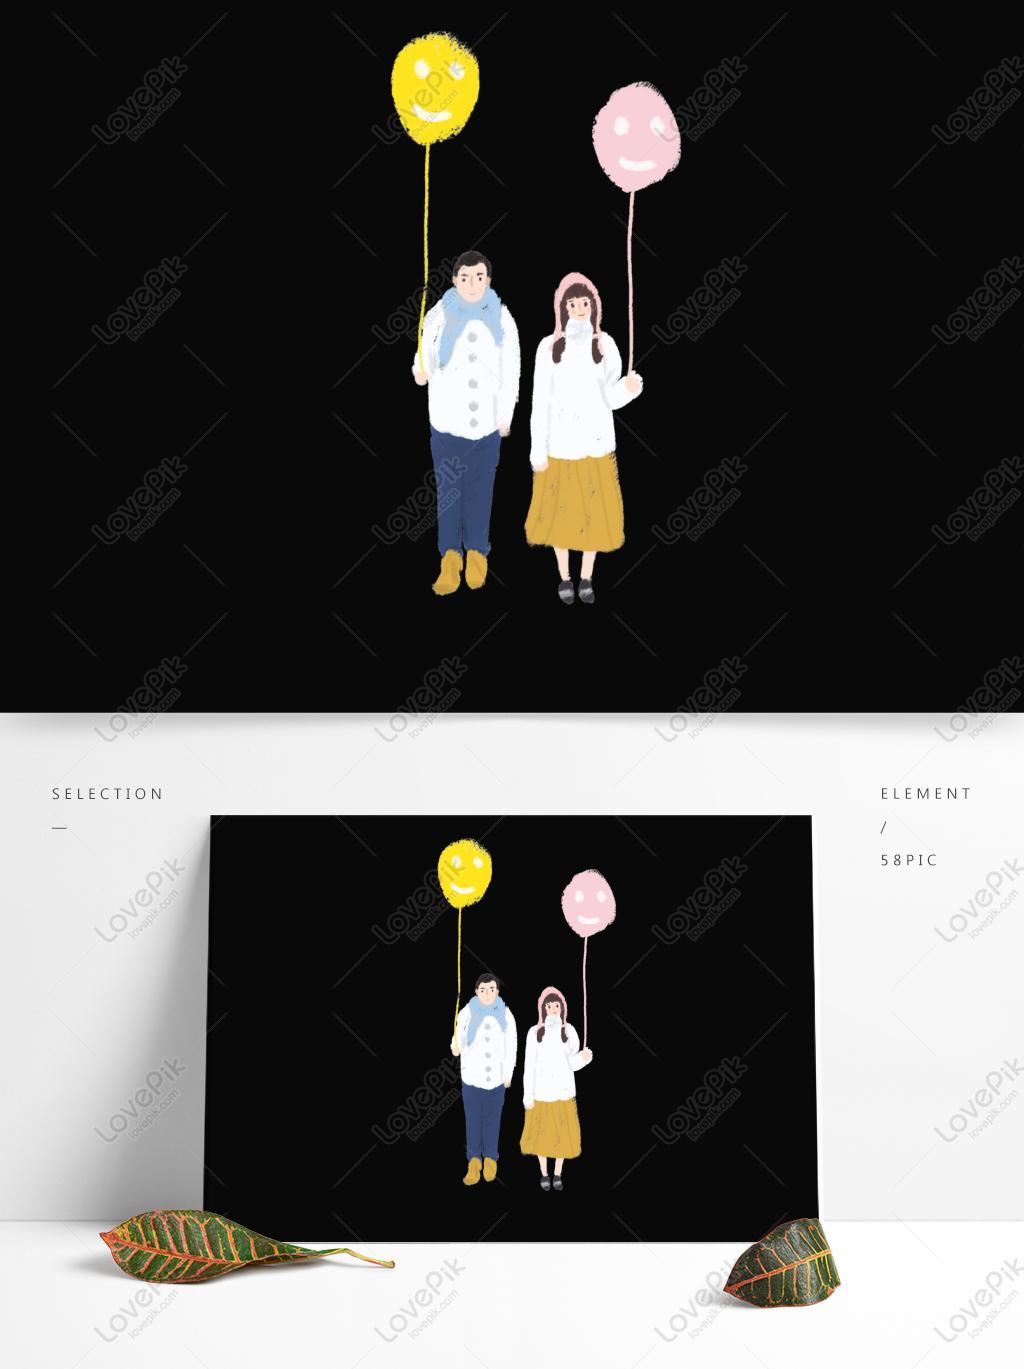 Kartun Pasangan Kecil Segar Memegang Balon Dengan Elemen Komersi